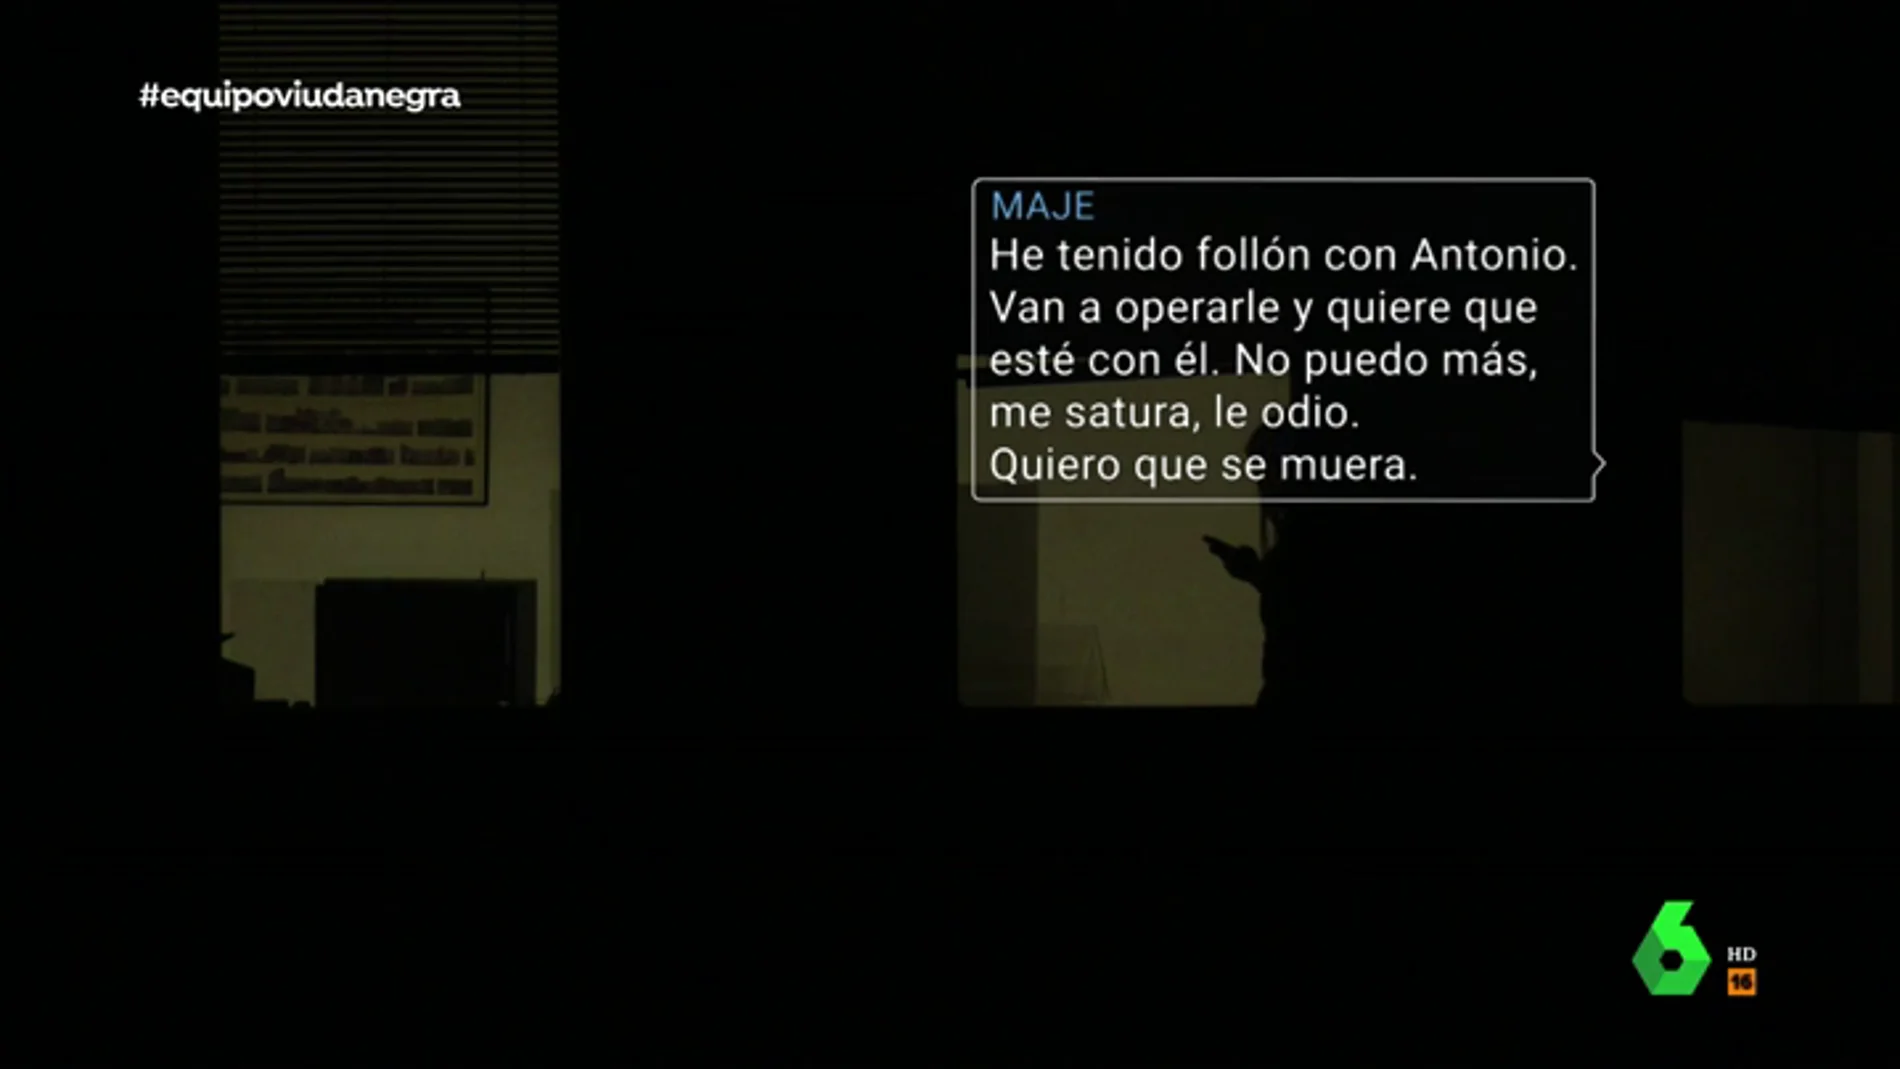 Los mensajes de Maje con uno de sus amantes sobre Antonio Navarro antes del asesinato: "Me maltrata, he pensado en acabar con su vida"